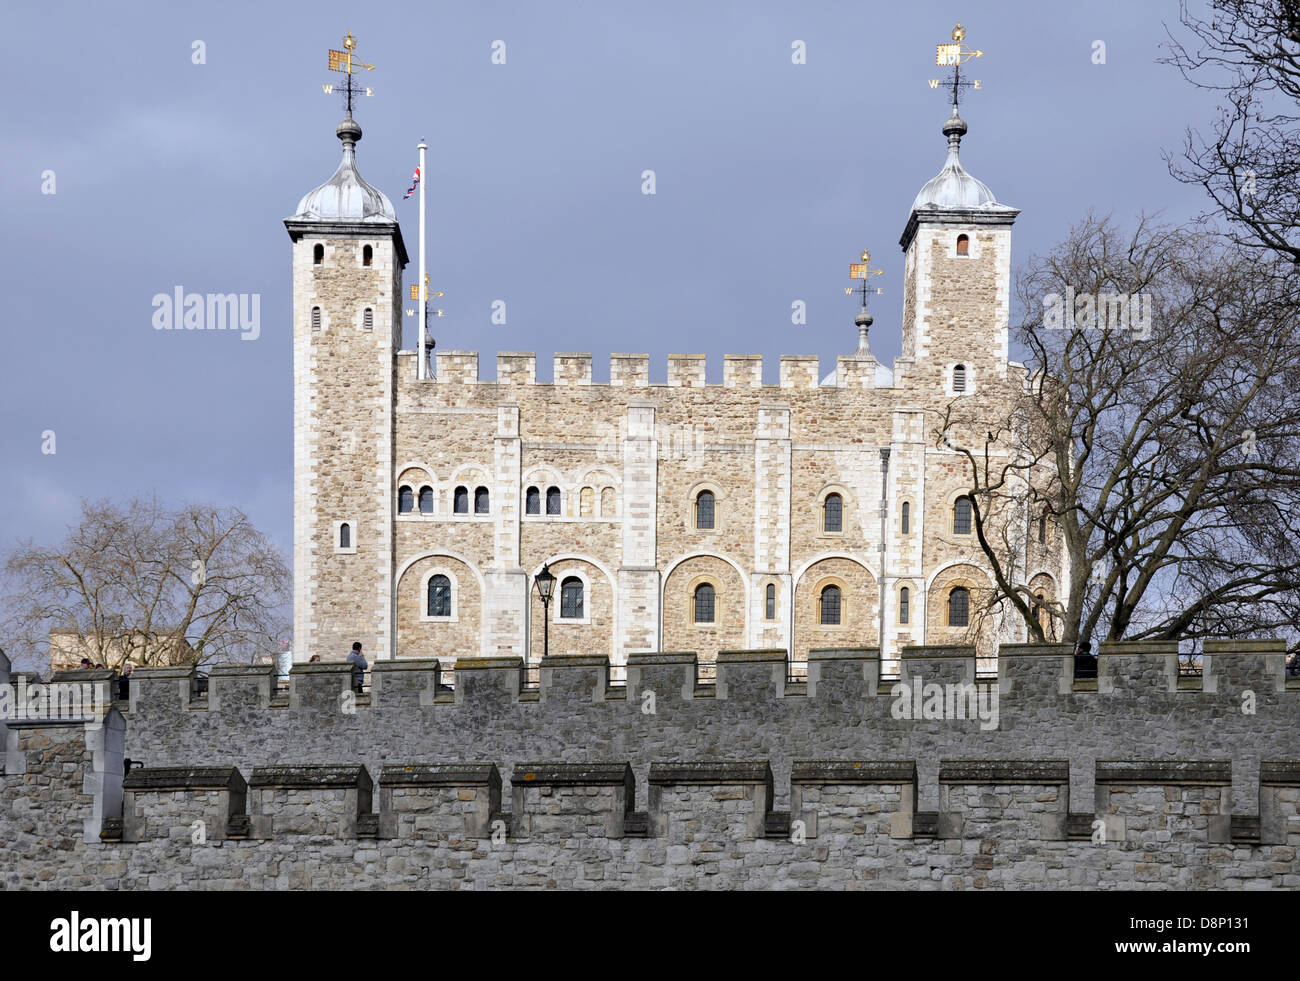 Parte de la Torre de Londres con la torre blanca en el fondo y el muro cortina exterior en primer plano. Londres, Inglaterra, Reino Unido. Foto de stock